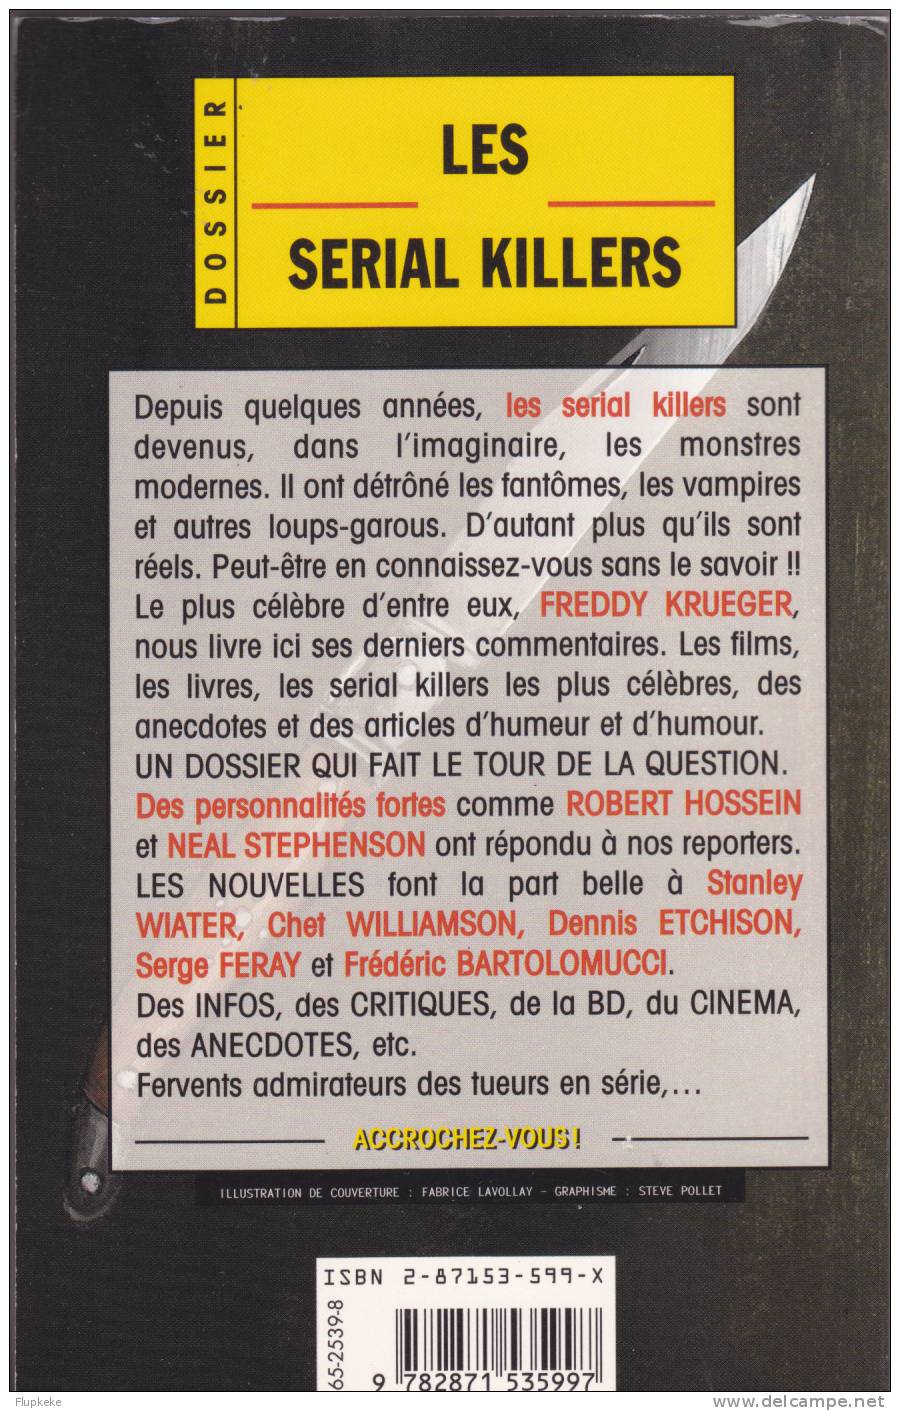 Phénix 47 Août 1998 Les Serial Killers Lefrancq Éditeur - Lefrancq